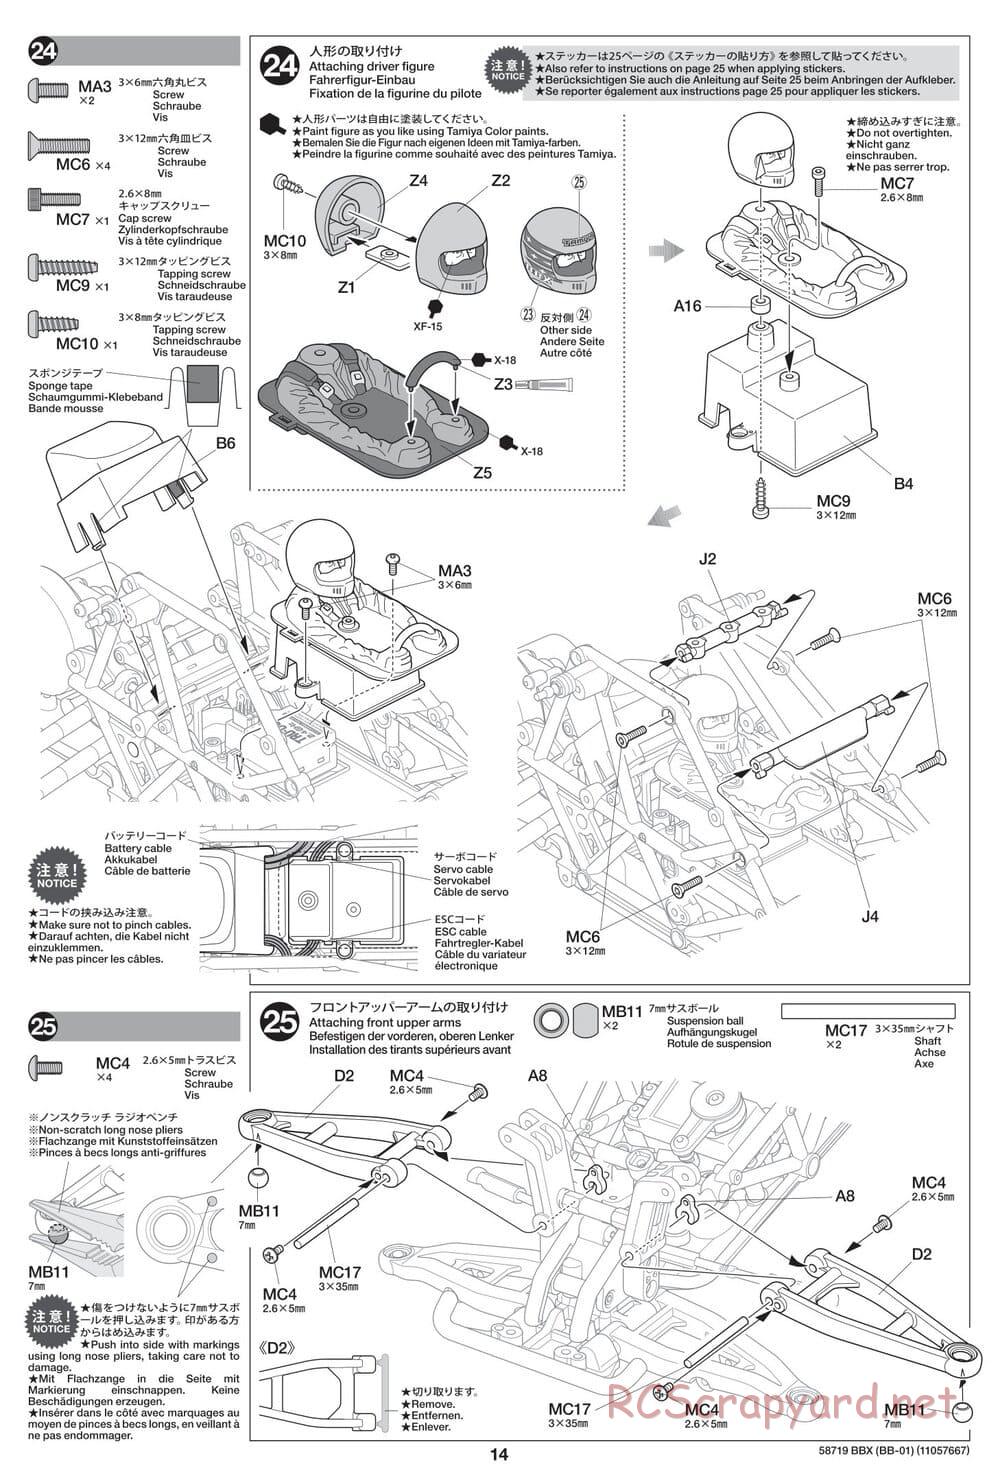 Tamiya - BBX - BB-01 Chassis - Manual - Page 14